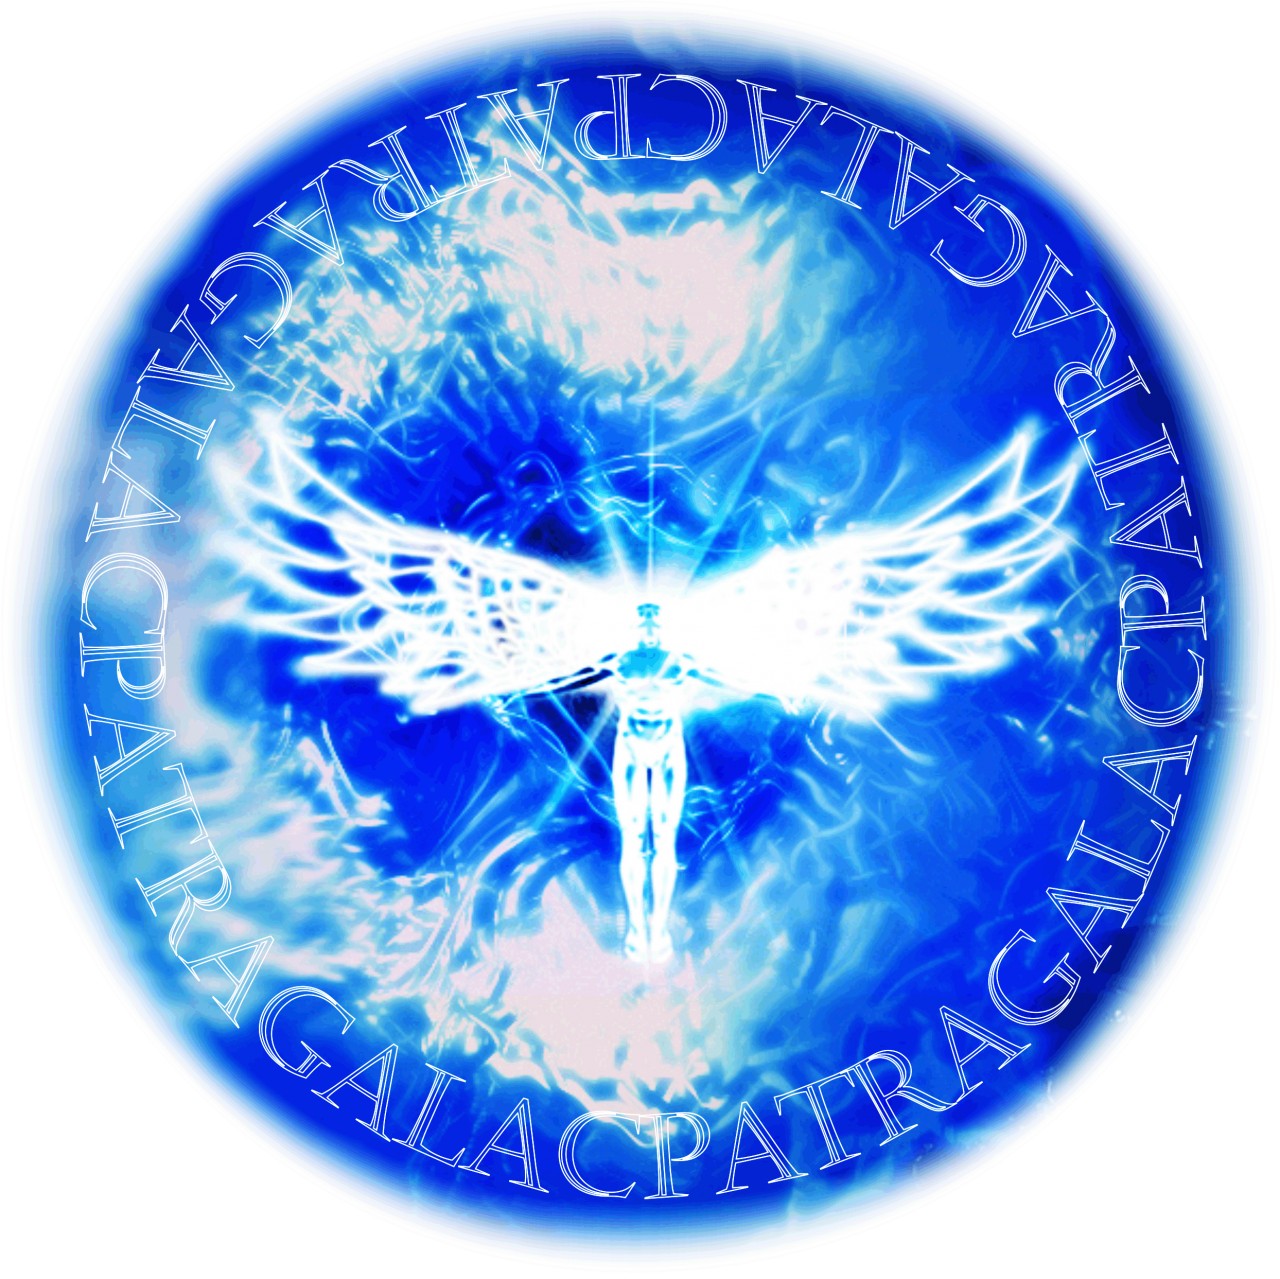 Галактическая Федерация света знак. Эмблема Галактической Федерации. Галактическая Конфедерация сил света. Флаг Галактической Федерации света.